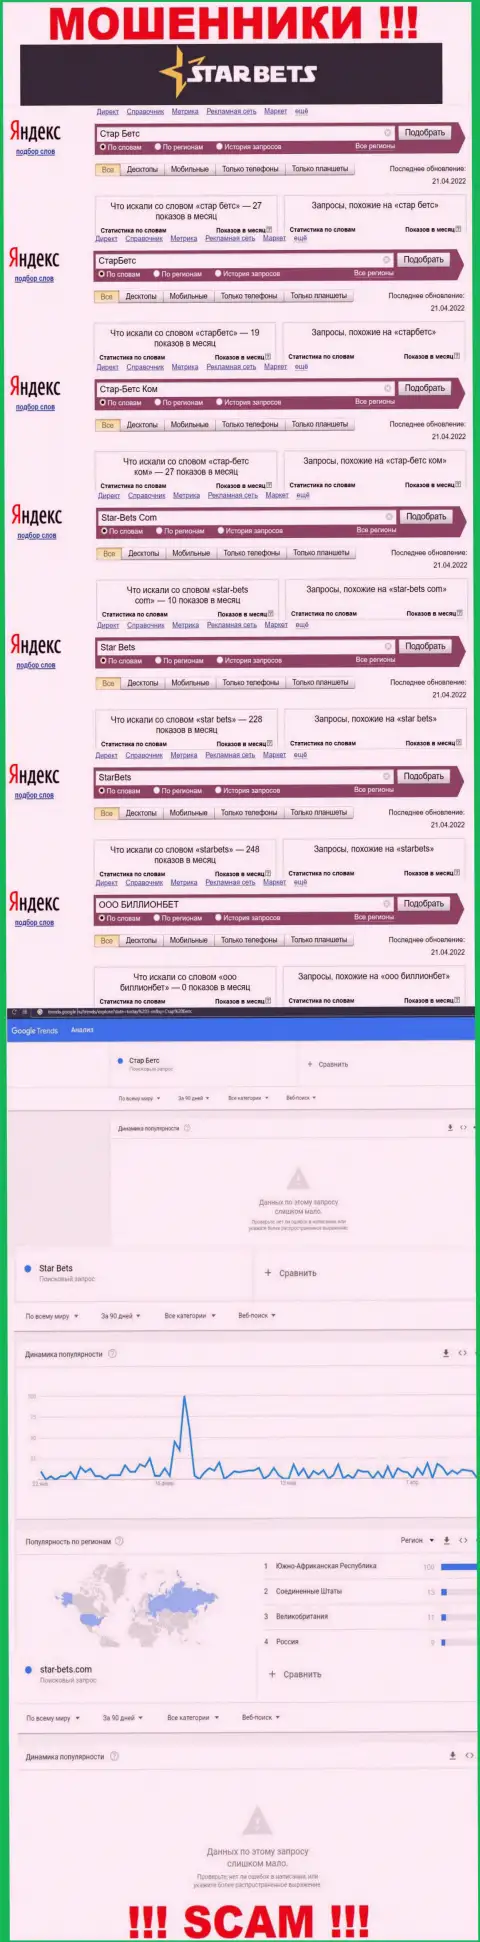 Скриншот итогов онлайн запросов по жульнической организации StarBets